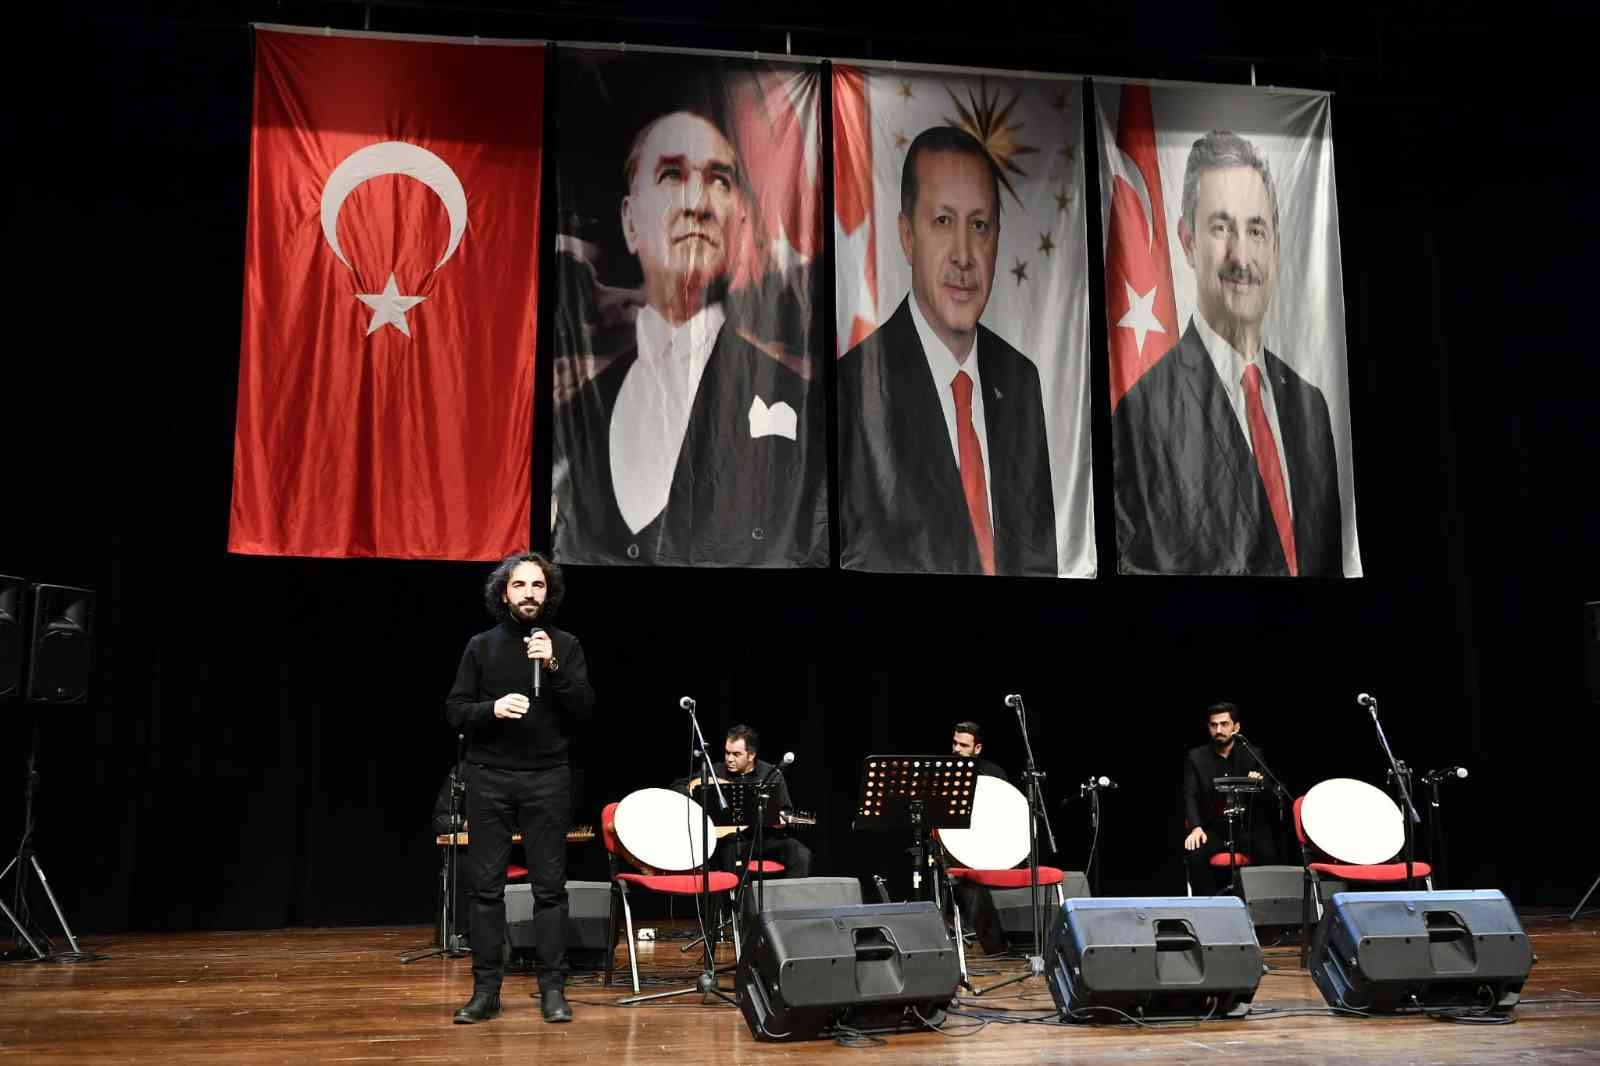 Türk tasavvuf musikisinin özel eserleri Mamak’ta yankılandı #ankara